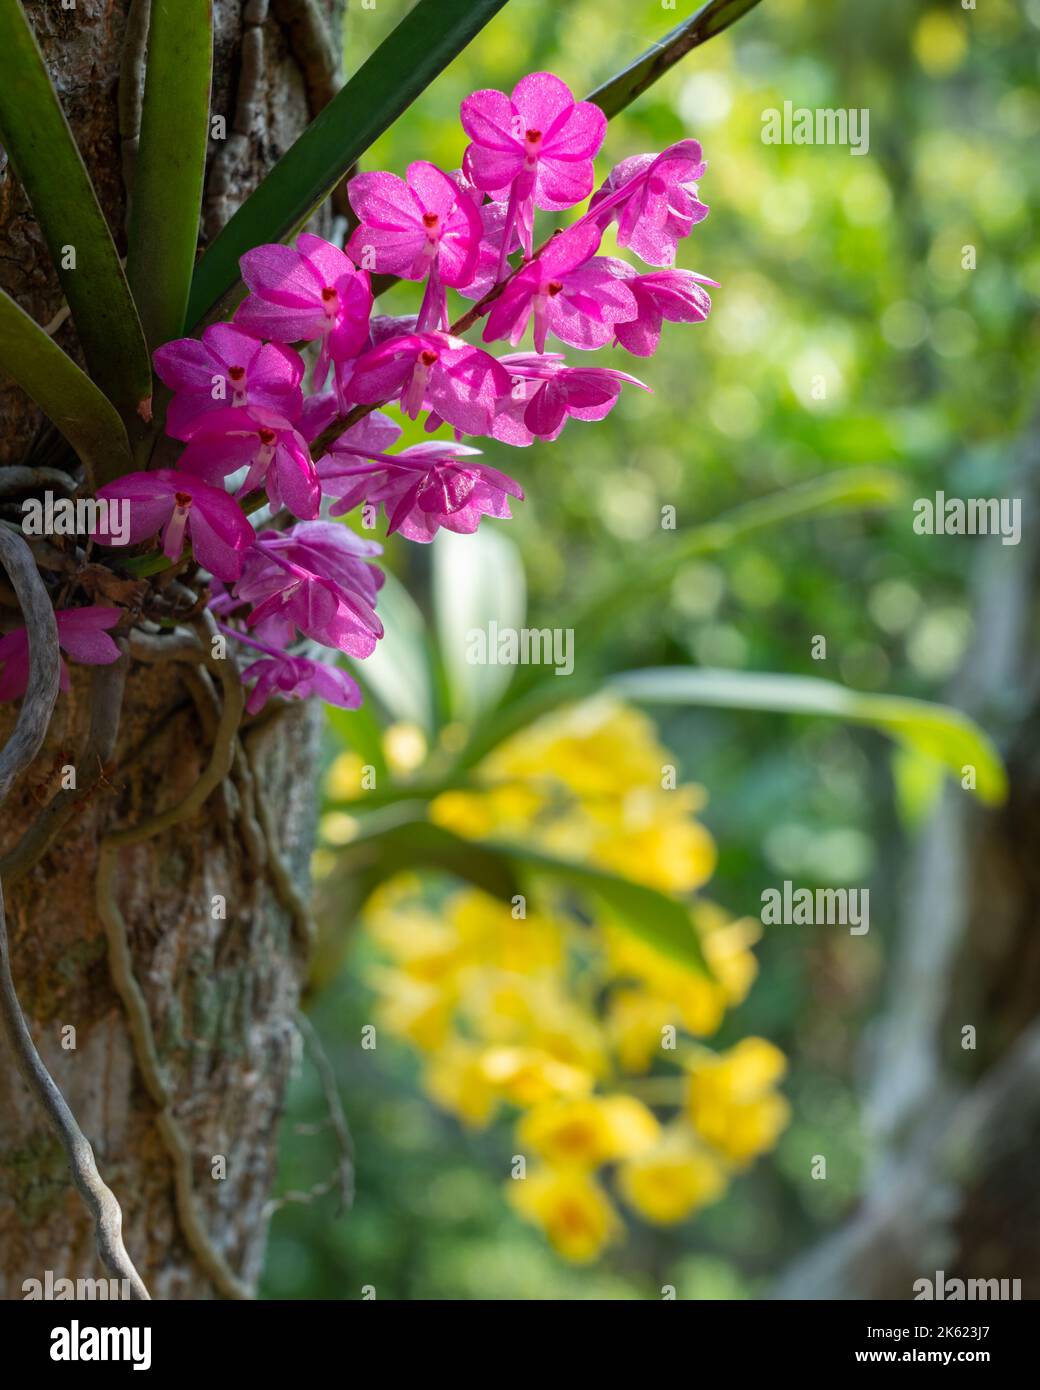 Fleurs roses colorées de l'espèce épiphytique d'orchidée sauvage ascocentrum ampullaceum fleurir à l'extérieur avec dendrobium jaune en arrière-plan Banque D'Images